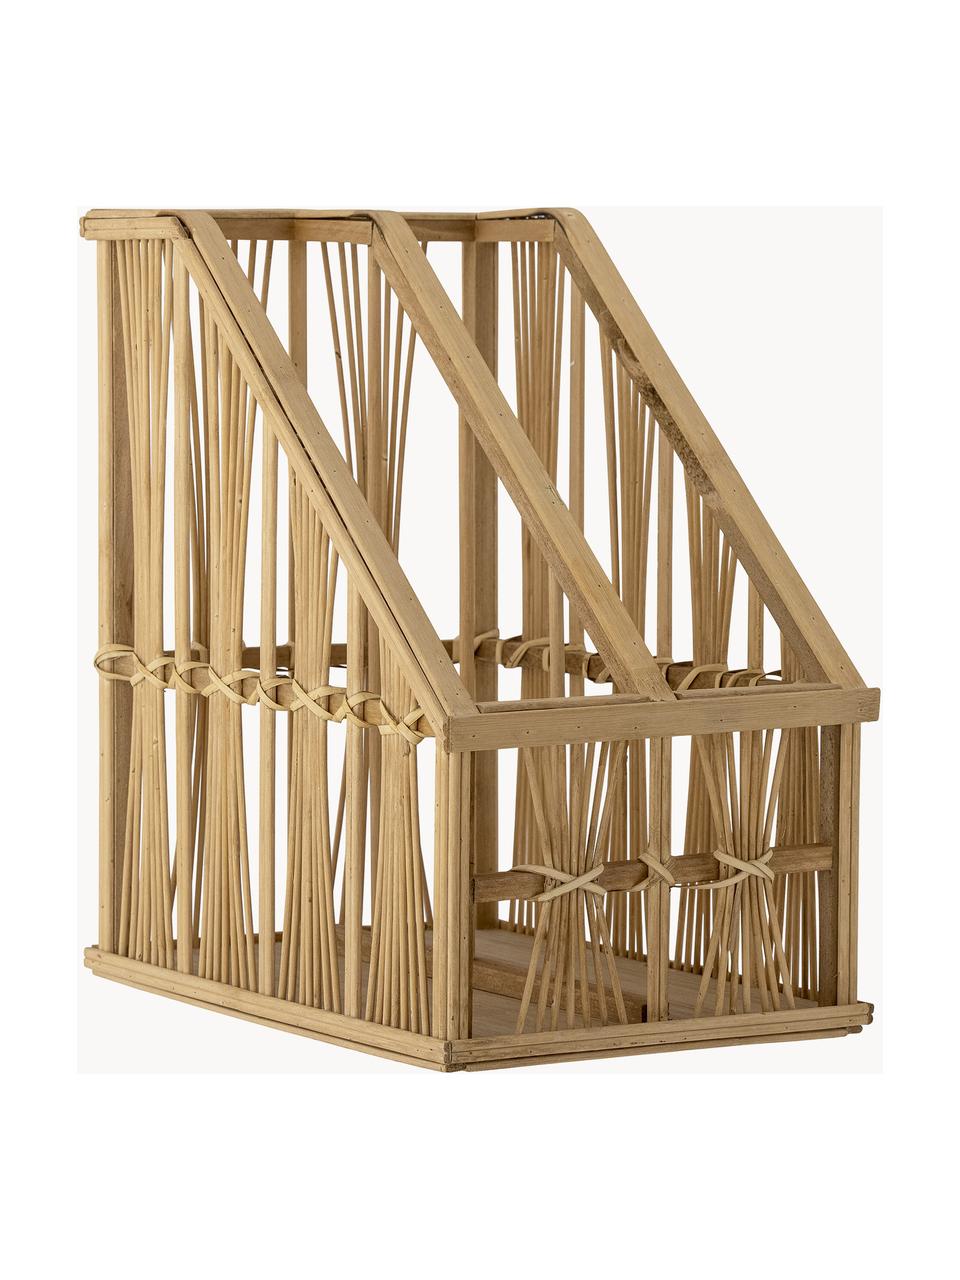 Stojak na czasopisma z drewna bambusowego i rattanu Tobi, Drewno bambusowe, rattan, drewno jodłowe, sklejka, Brązowy, S 21 x W 34 cm